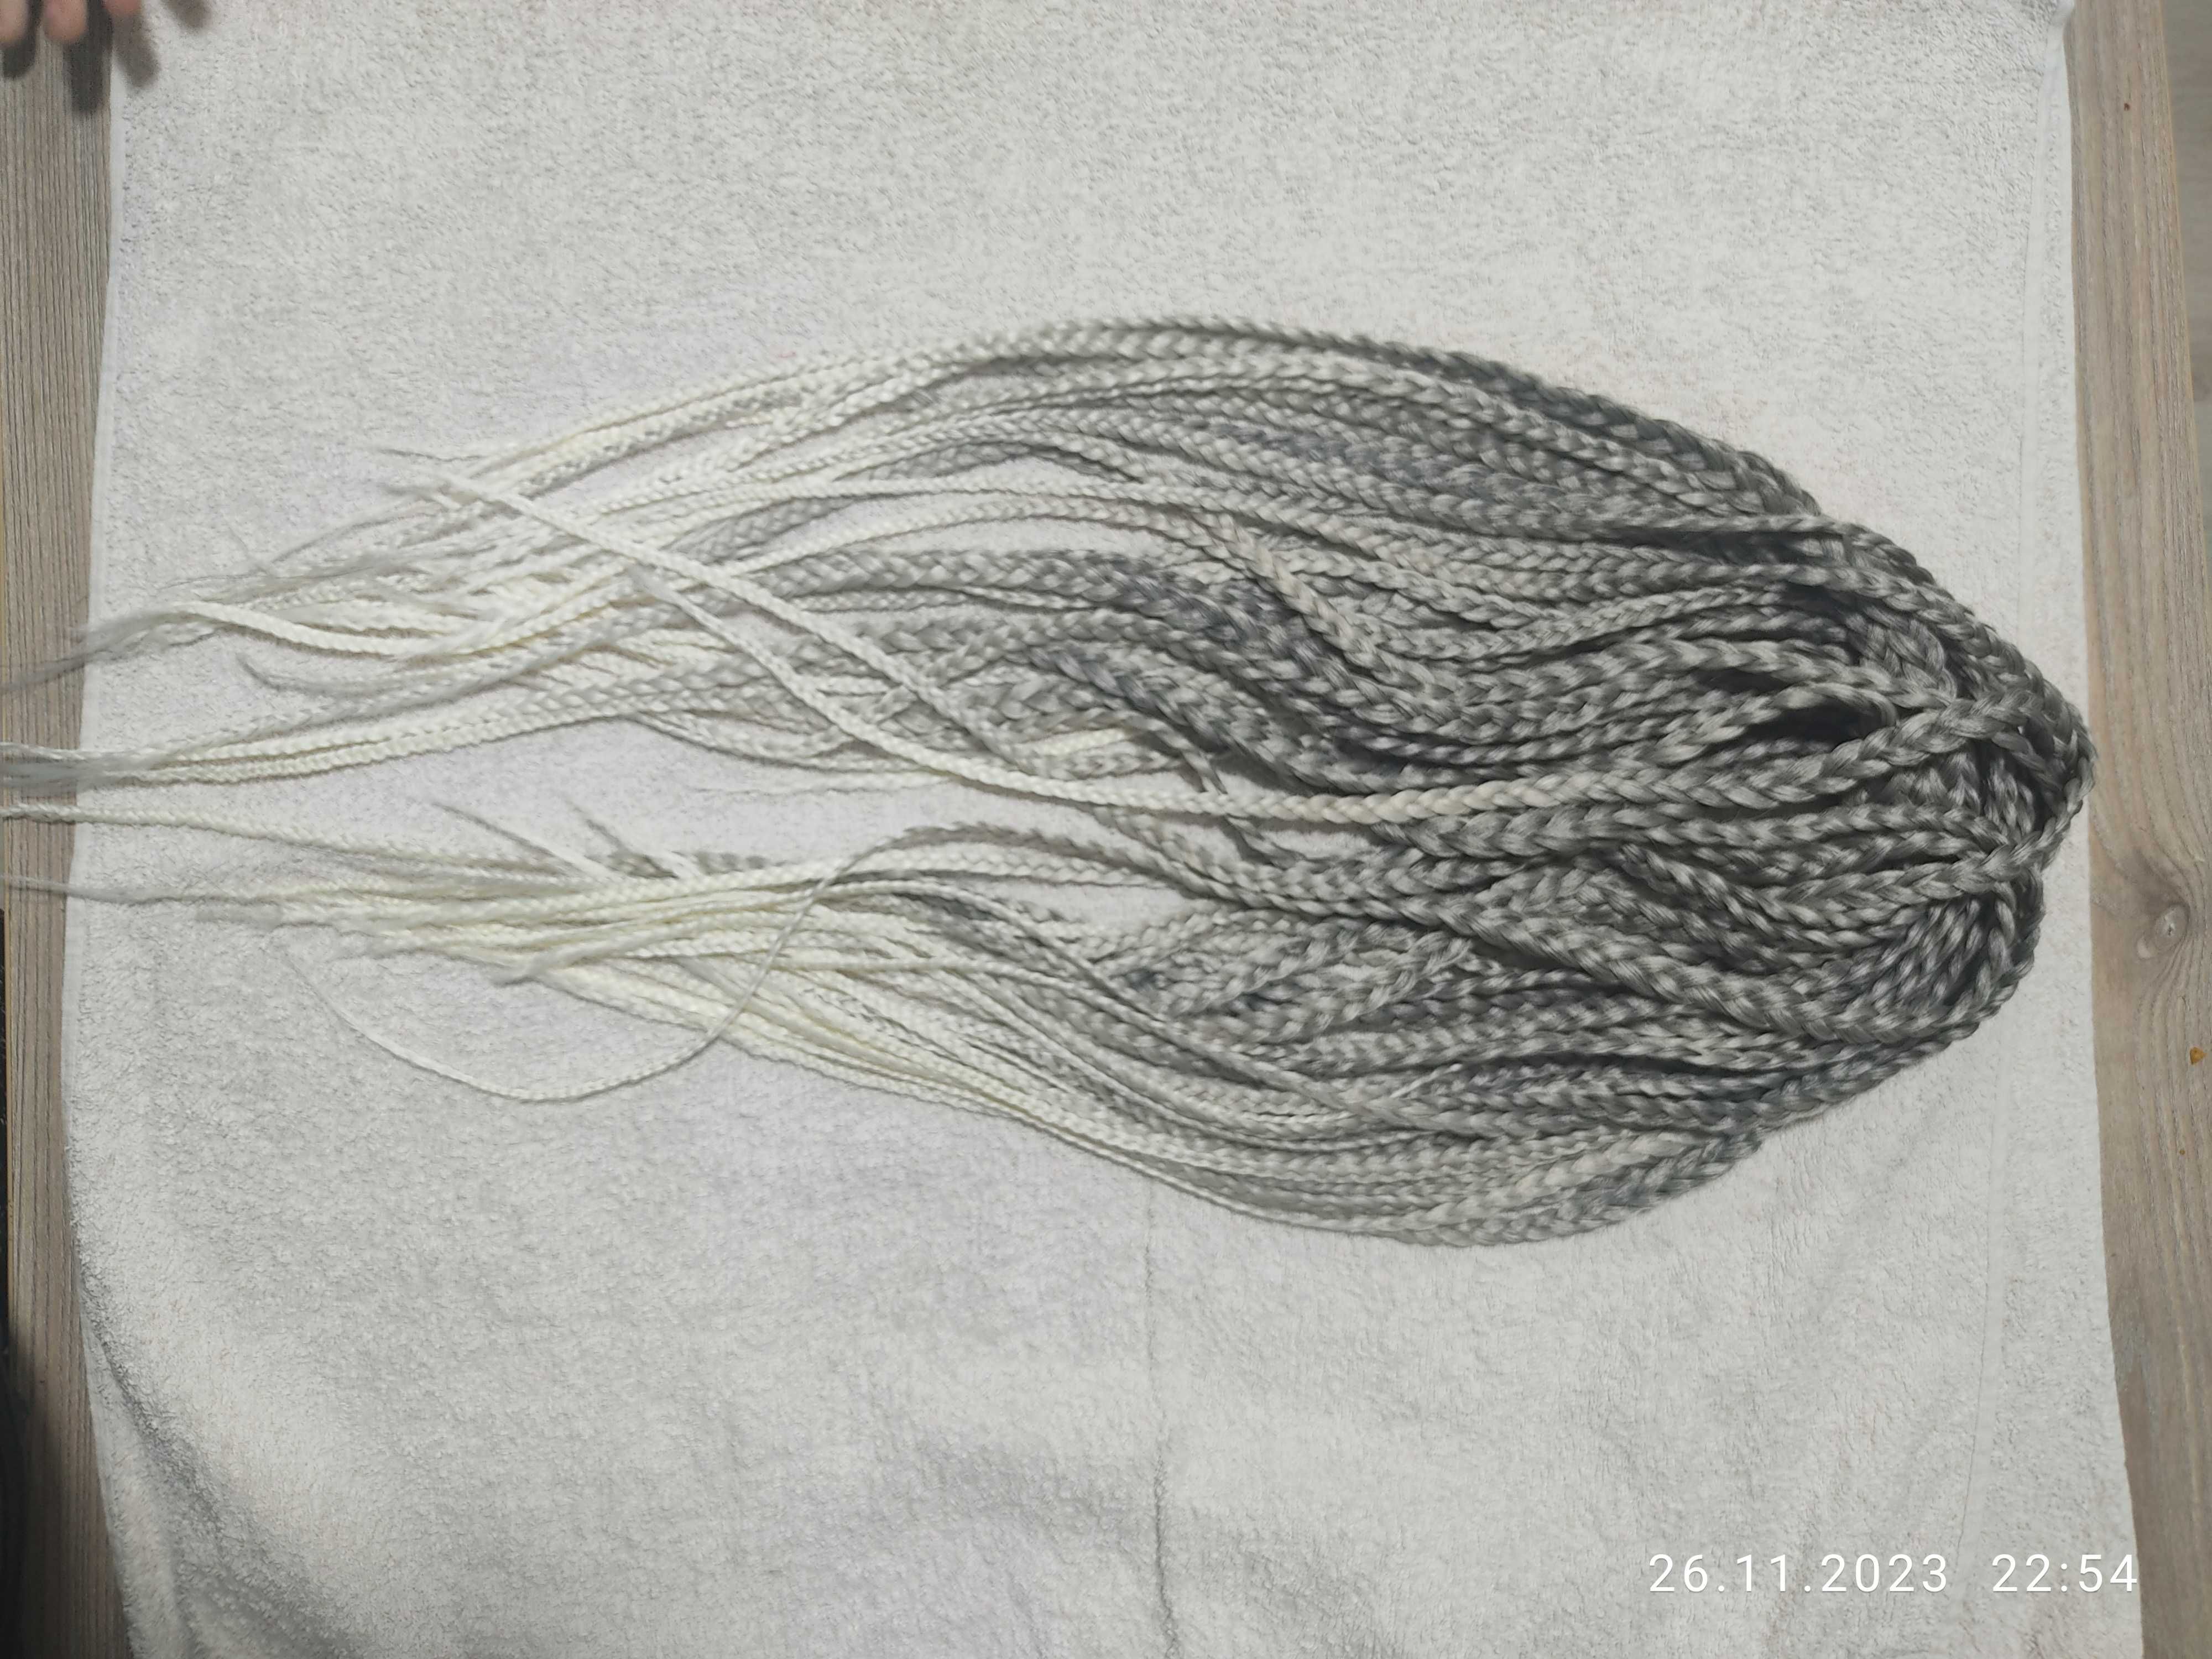 Плетение афрокосичек